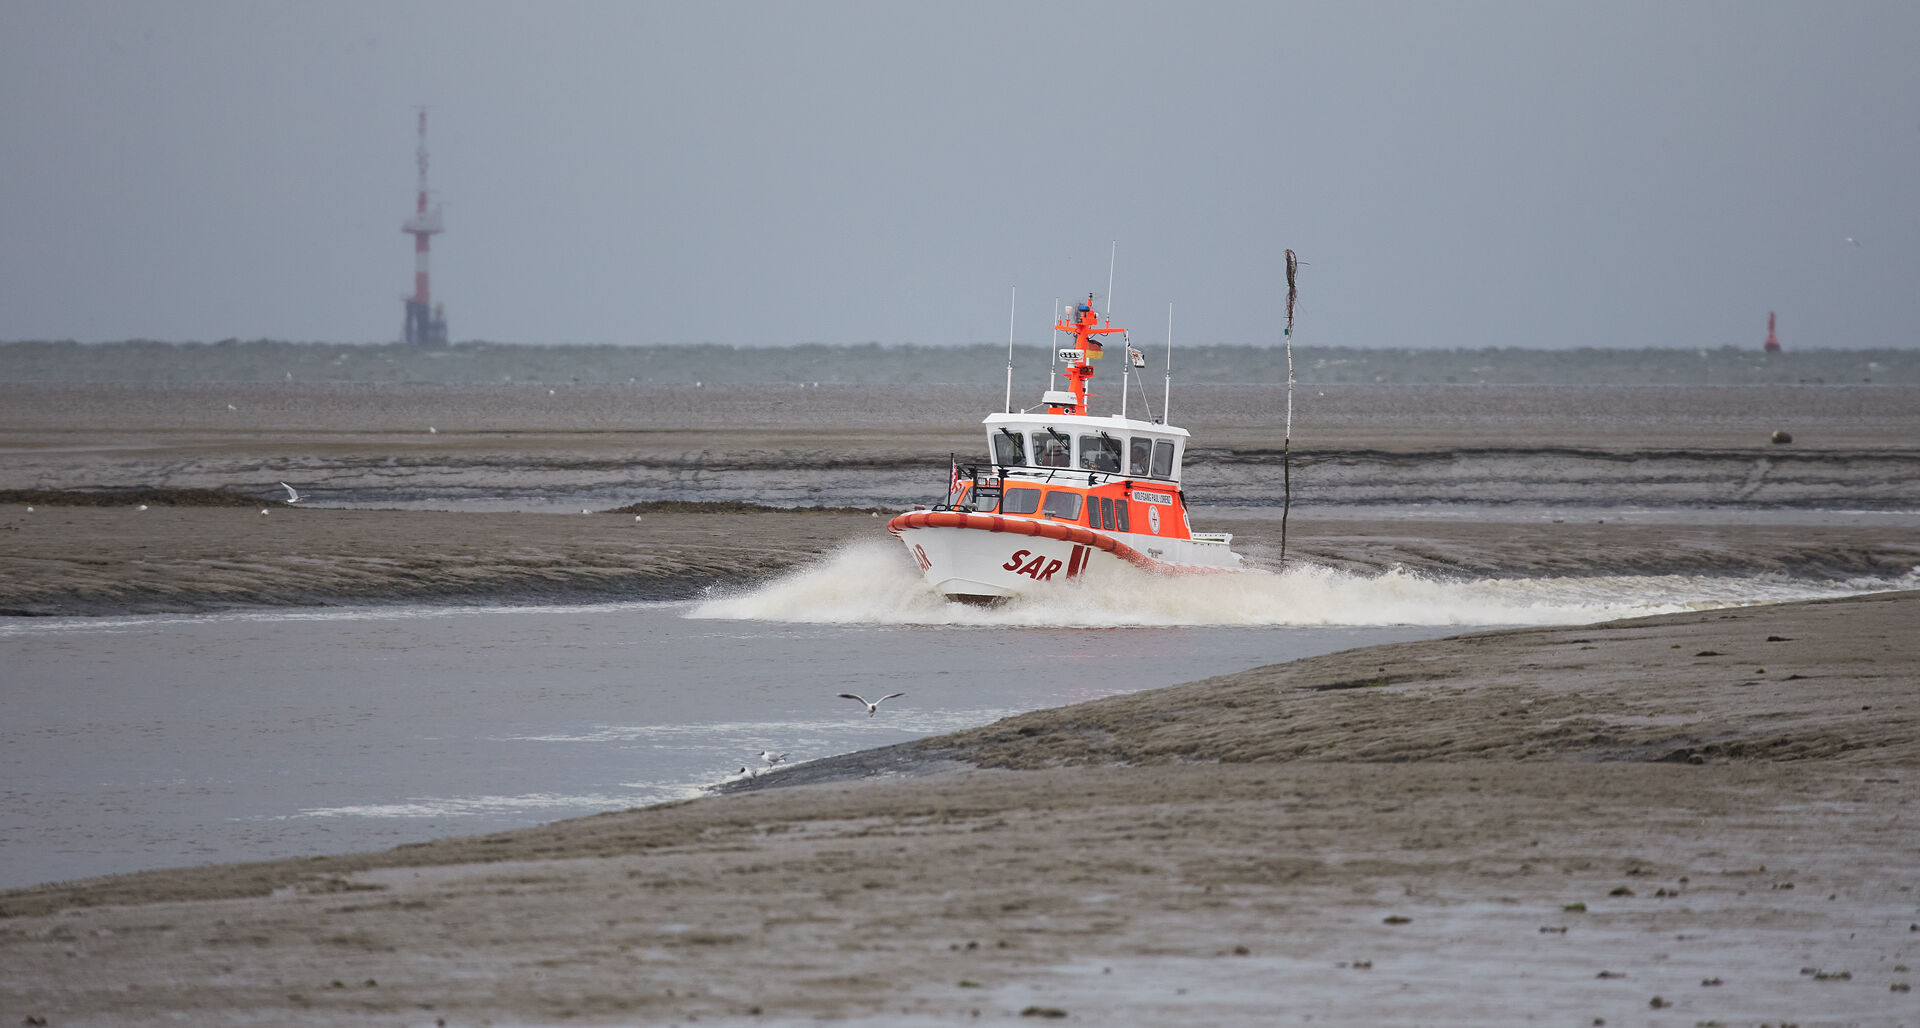 Ein Seenotrettungsboot fährt bei Niedrigwasser durch das enge Fahrwasser zwischen Wattgebieten.